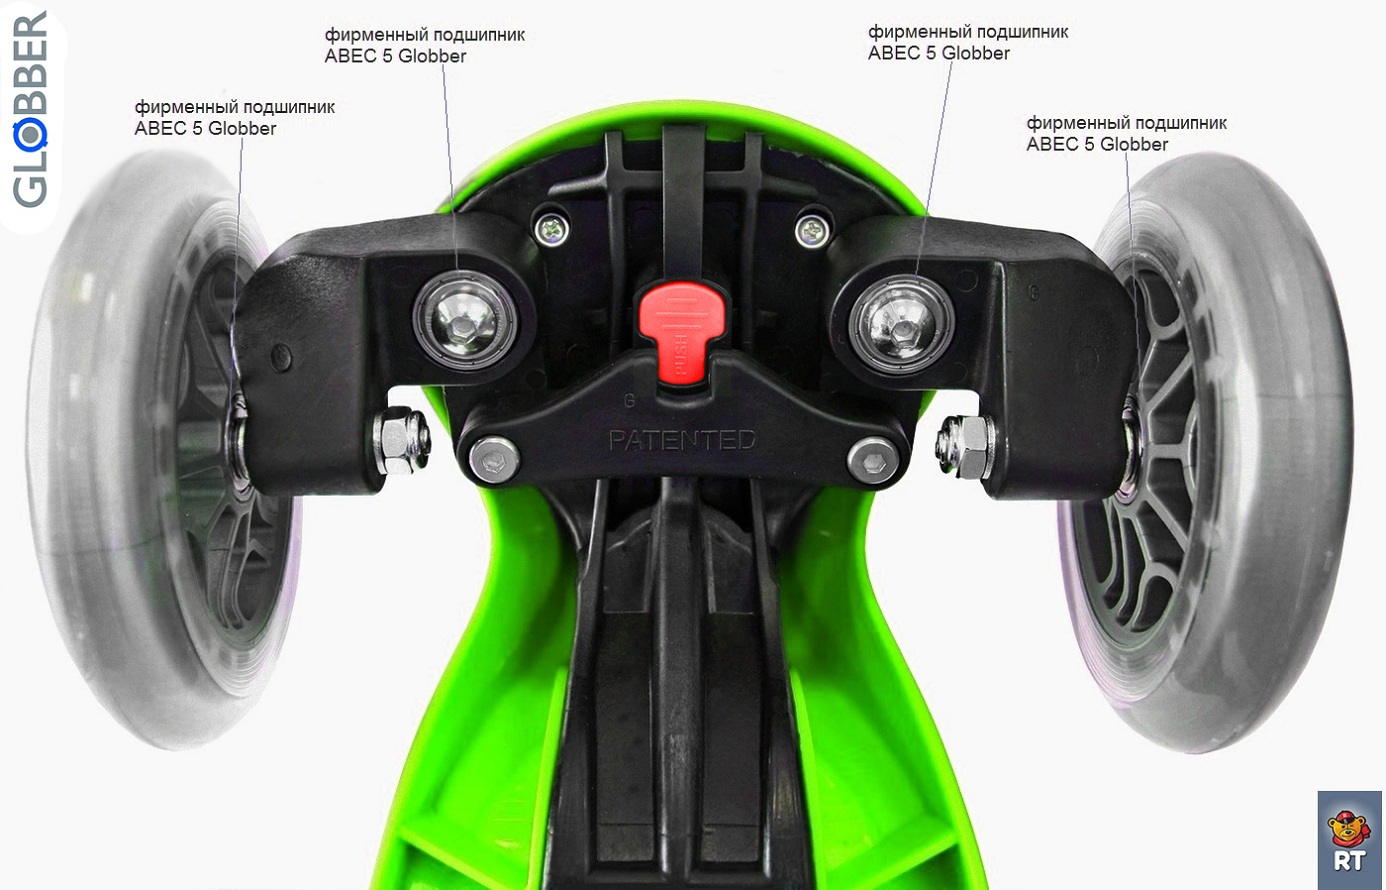 Самокат Globber Evo 4 in 1 Plus c подножками, с 3 светящимися колесами Green   